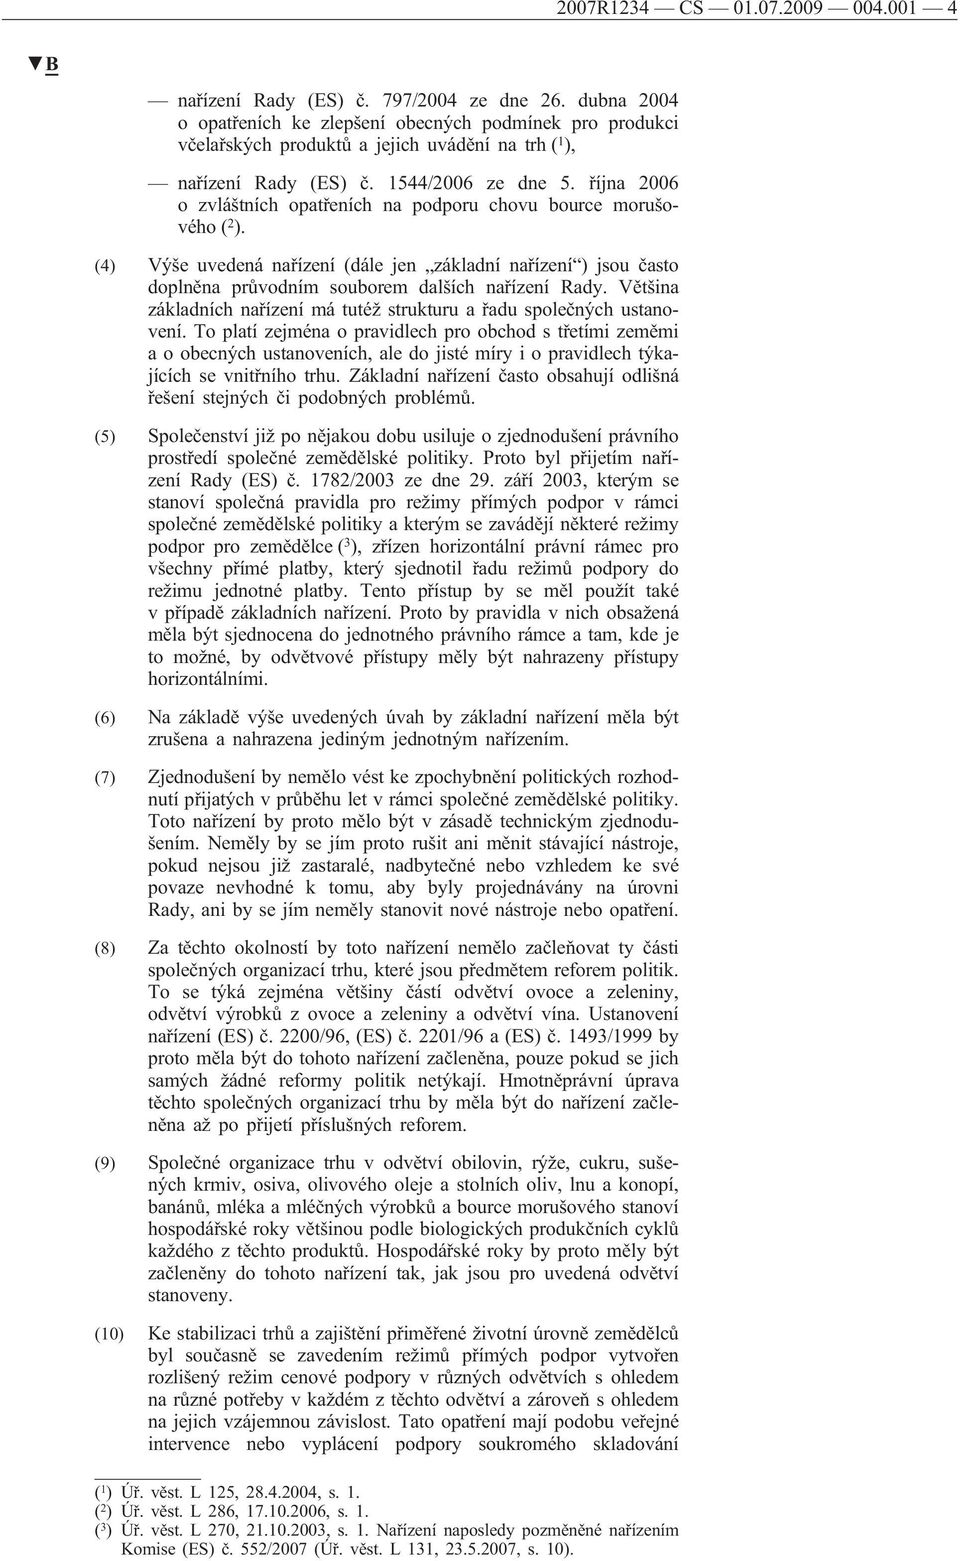 října 2006 o zvláštních opatřeních na podporu chovu bource morušového ( 2 ). (4) Výše uvedená nařízení (dále jen základní nařízení ) jsou často doplněna průvodním souborem dalších nařízení Rady.